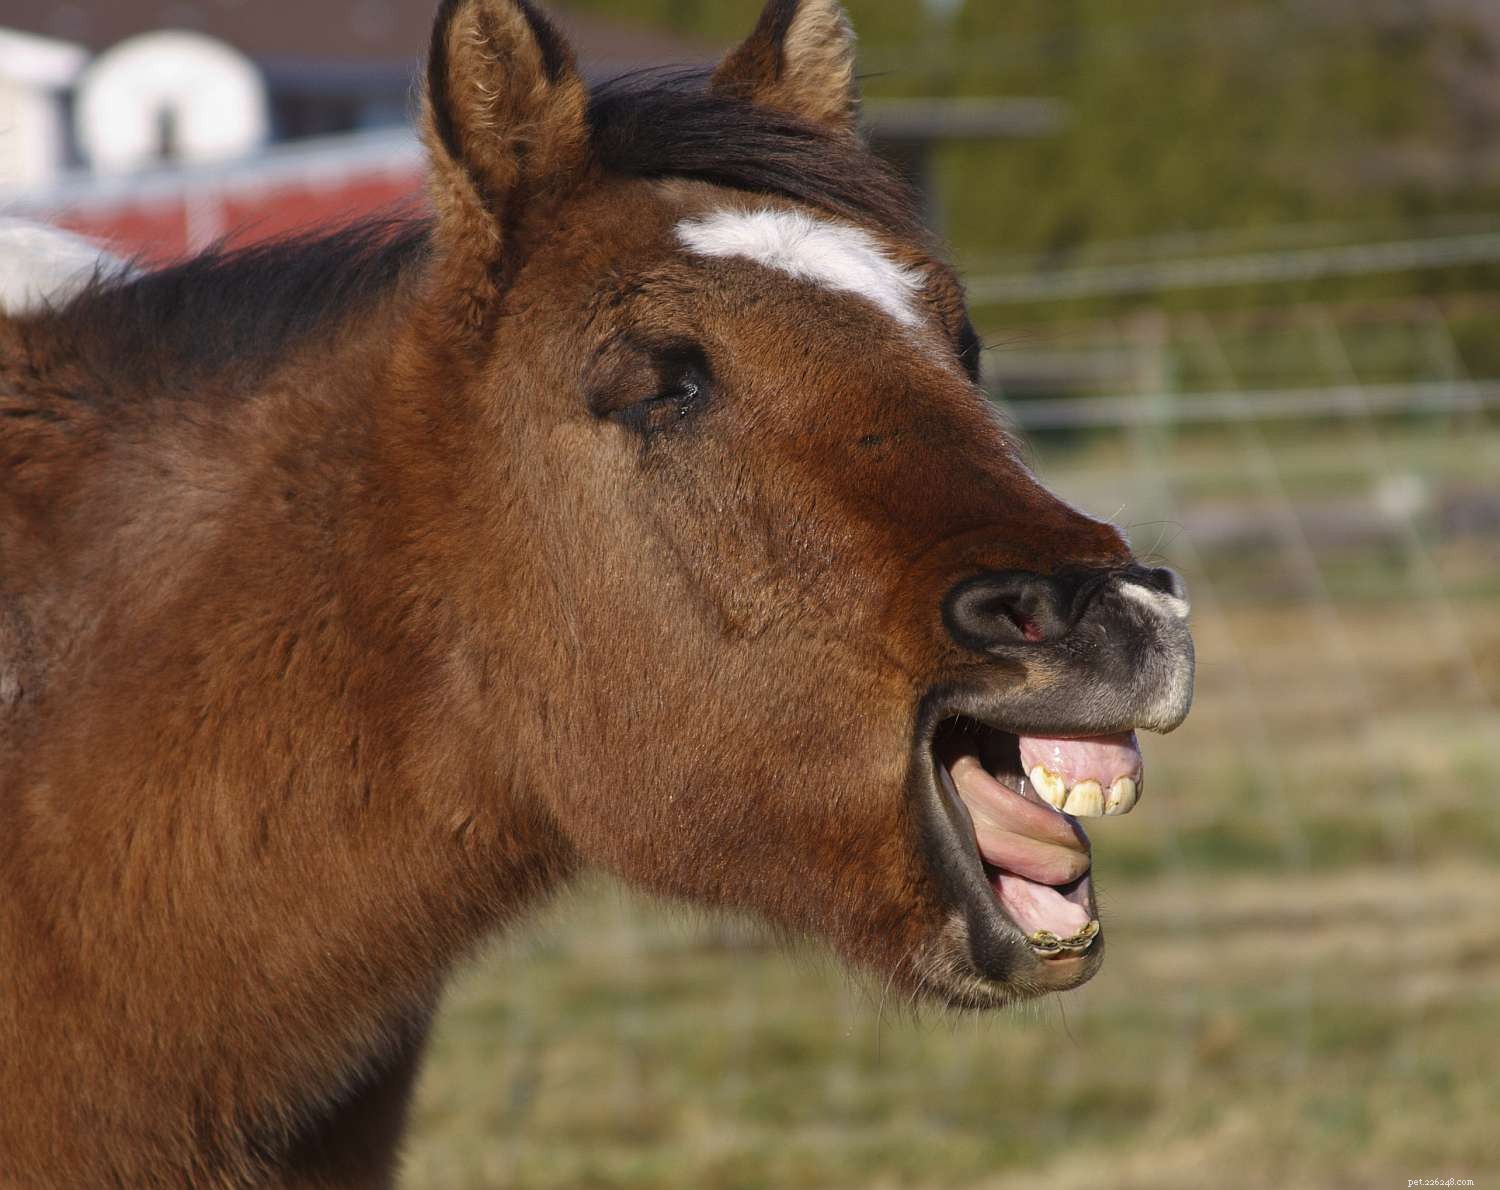 En savoir plus sur les dents de votre cheval